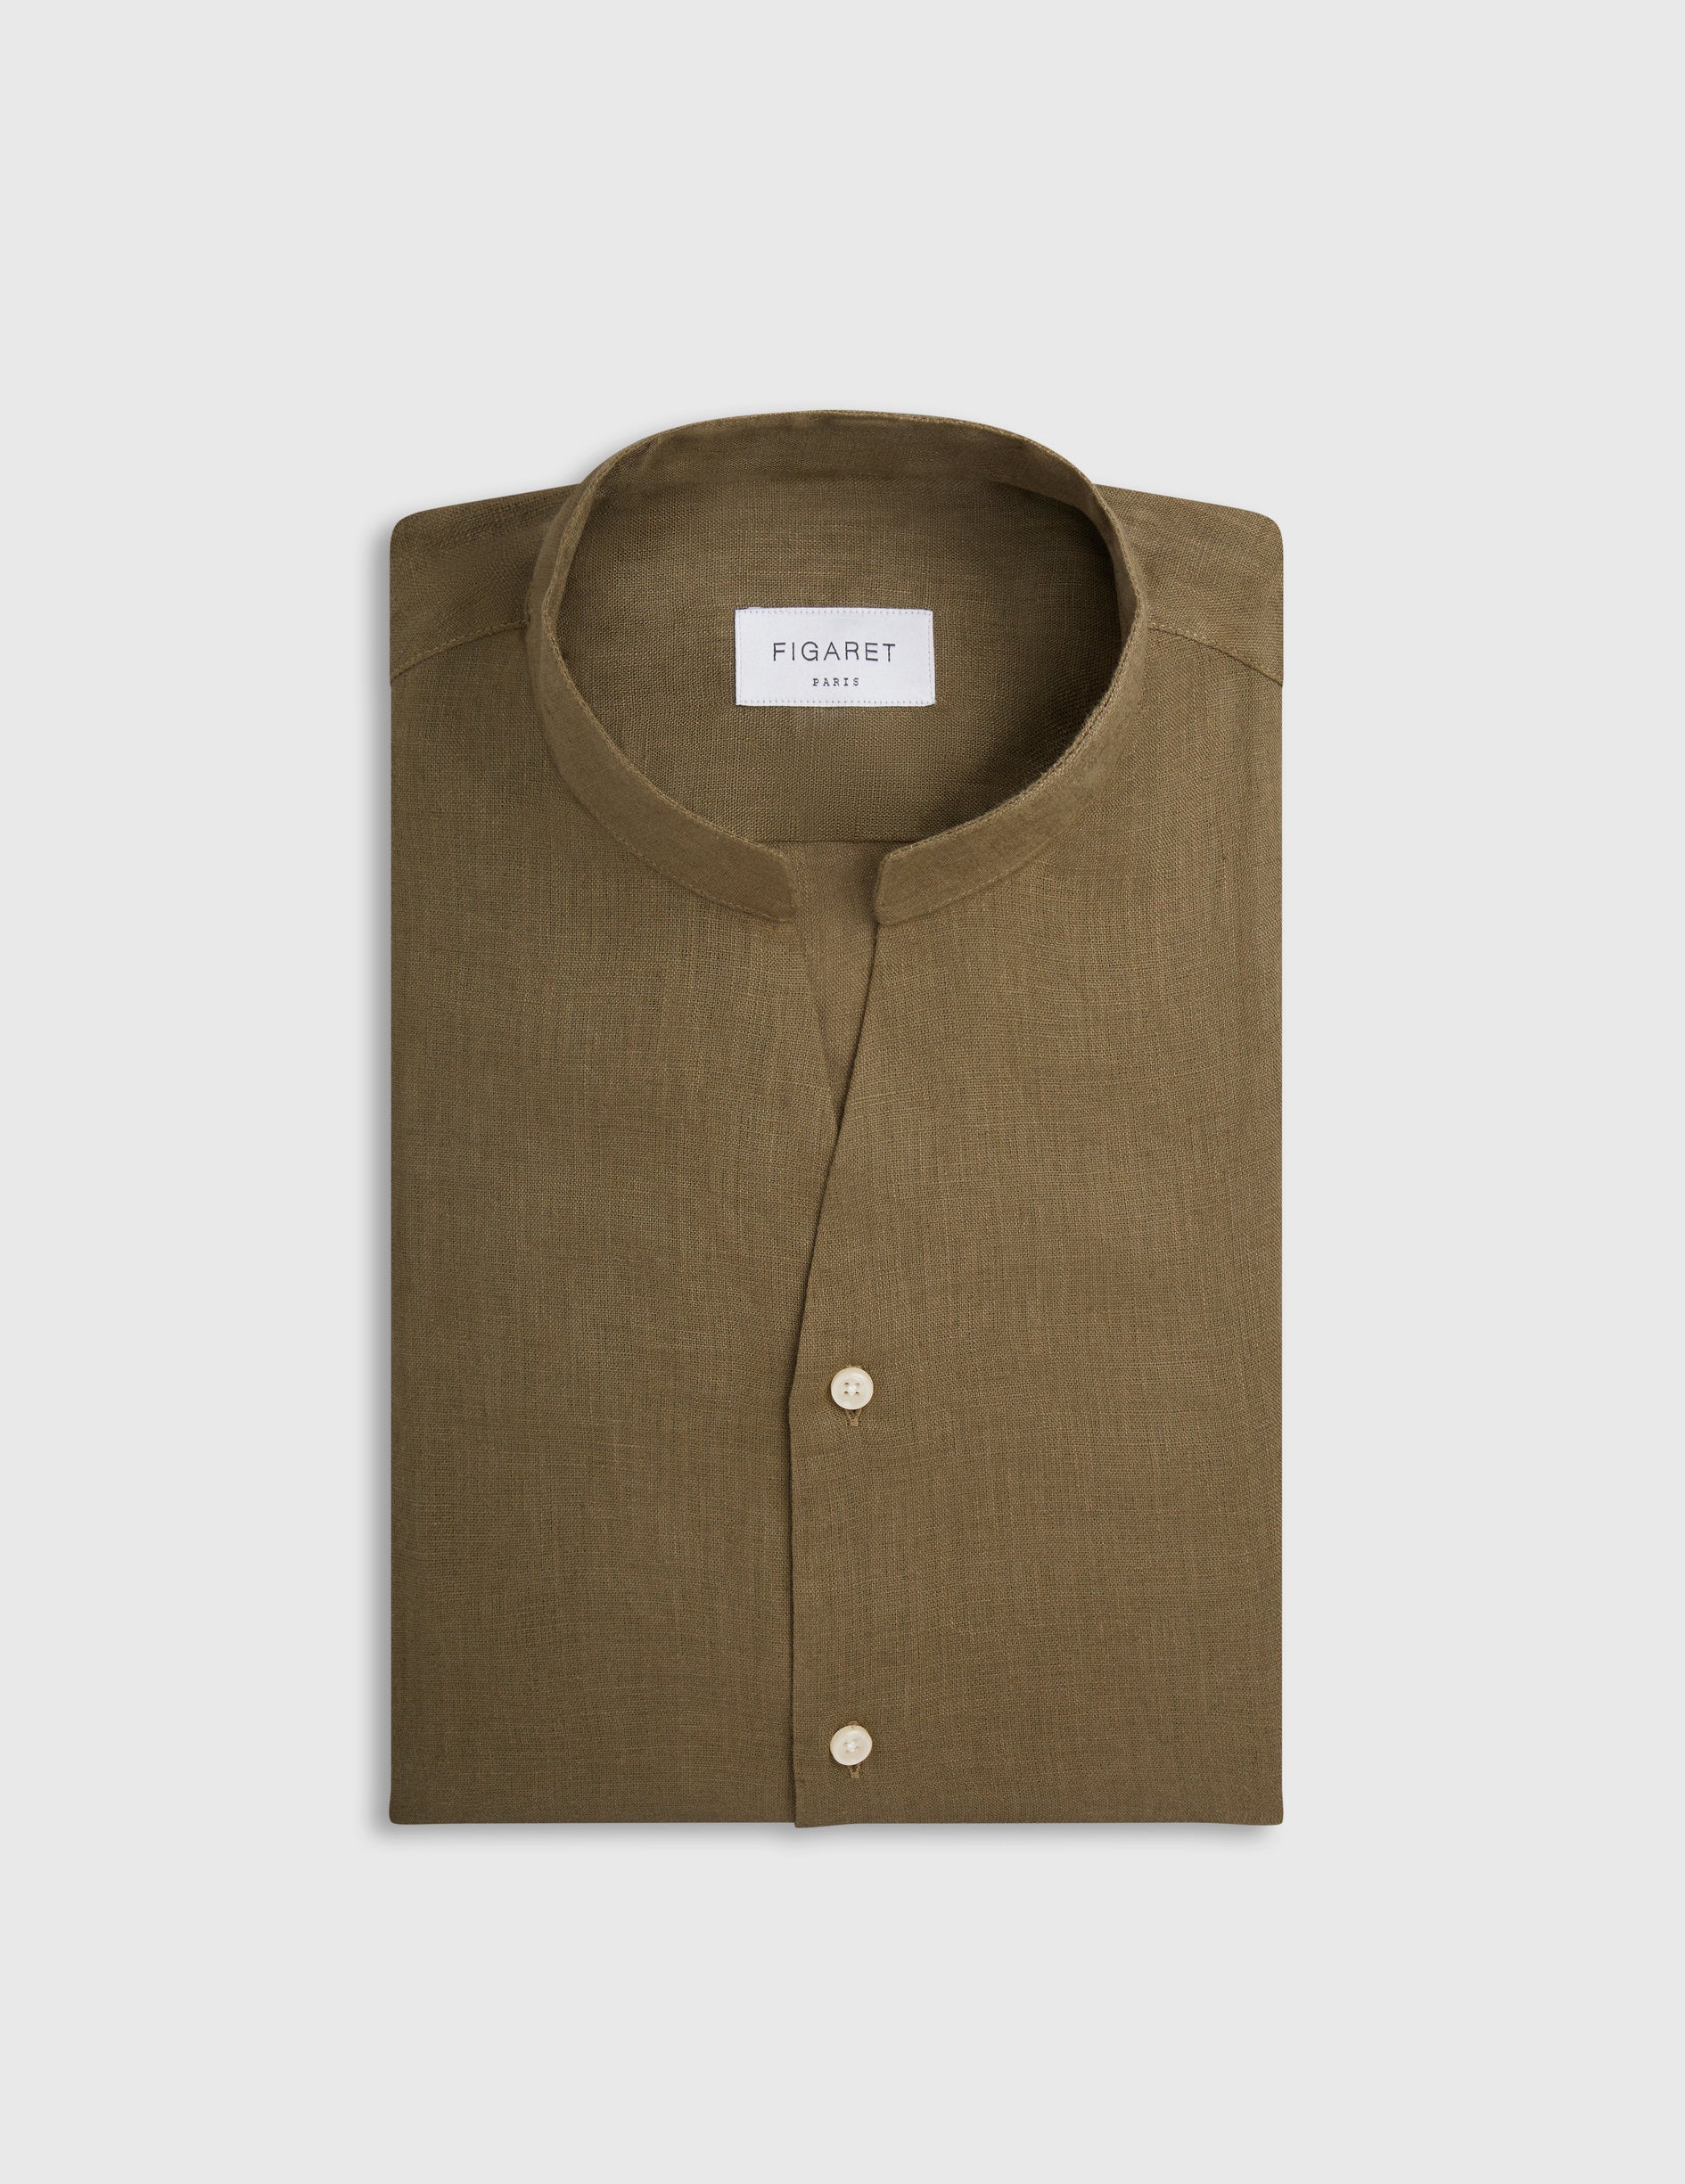 Carl shirt in khaki linen - Linen - Open straight  Collar